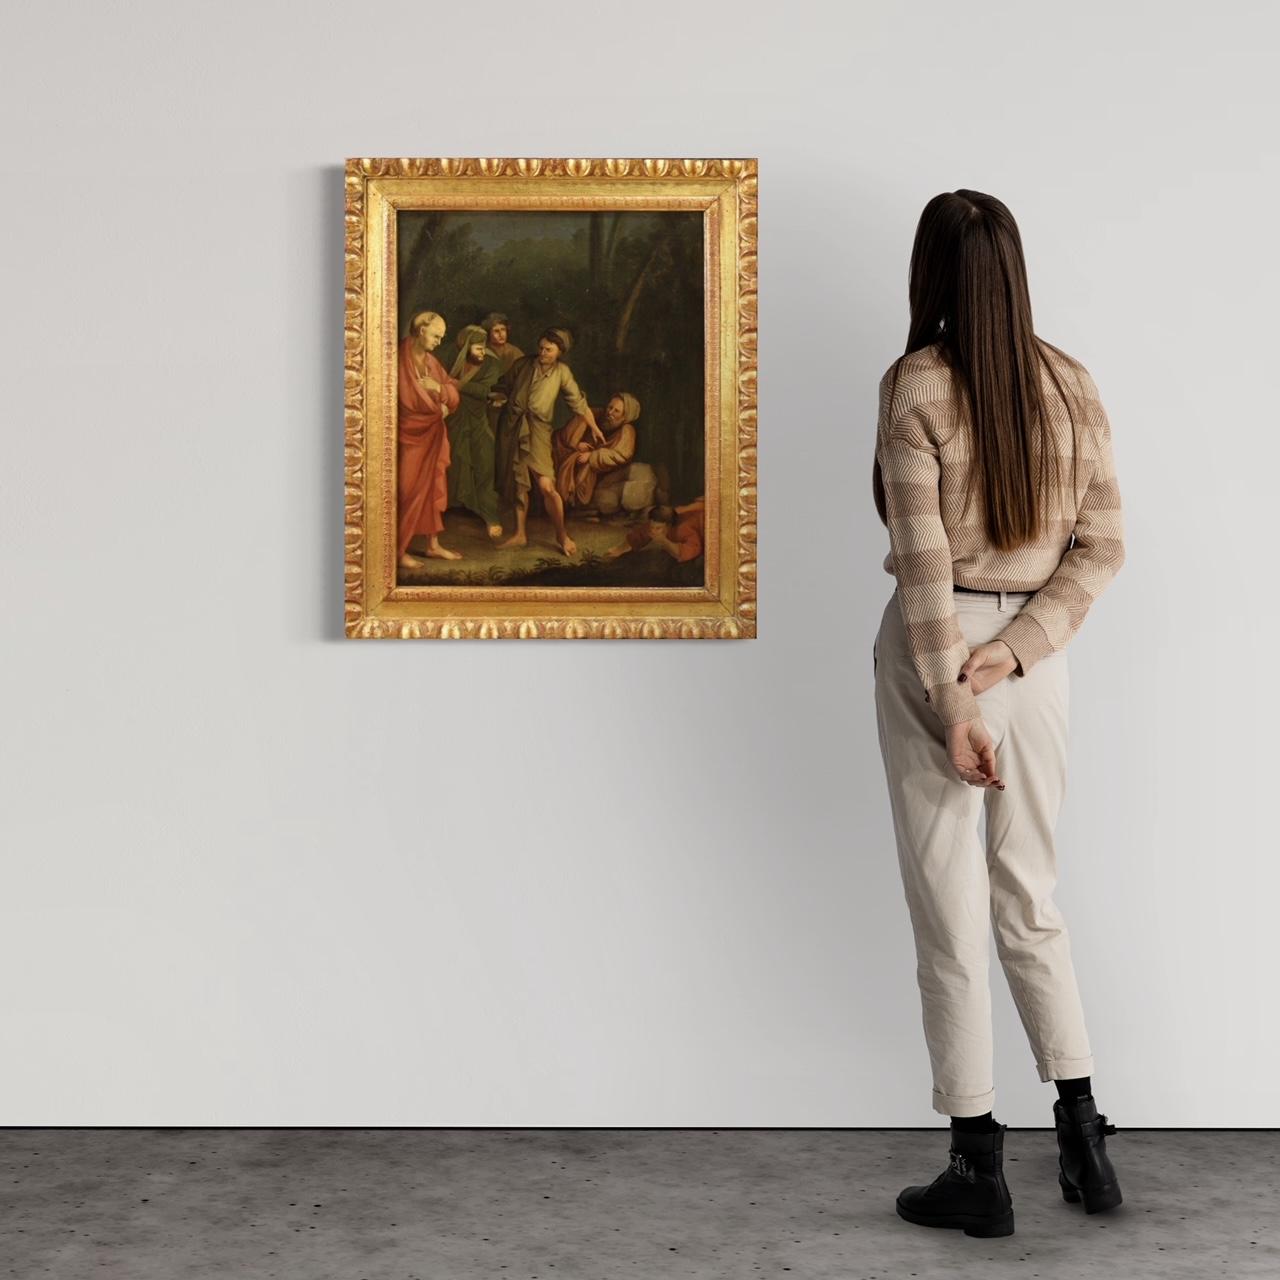 Peinture italienne ancienne du 18e siècle. Copie non-coeval de bonne qualité d'une peinture de Salvator Rosa exposée au Musée national d'art de Copenhague. Huile sur toile représentant un épisode de la vie de Diogène de Sinope. Un jour, le